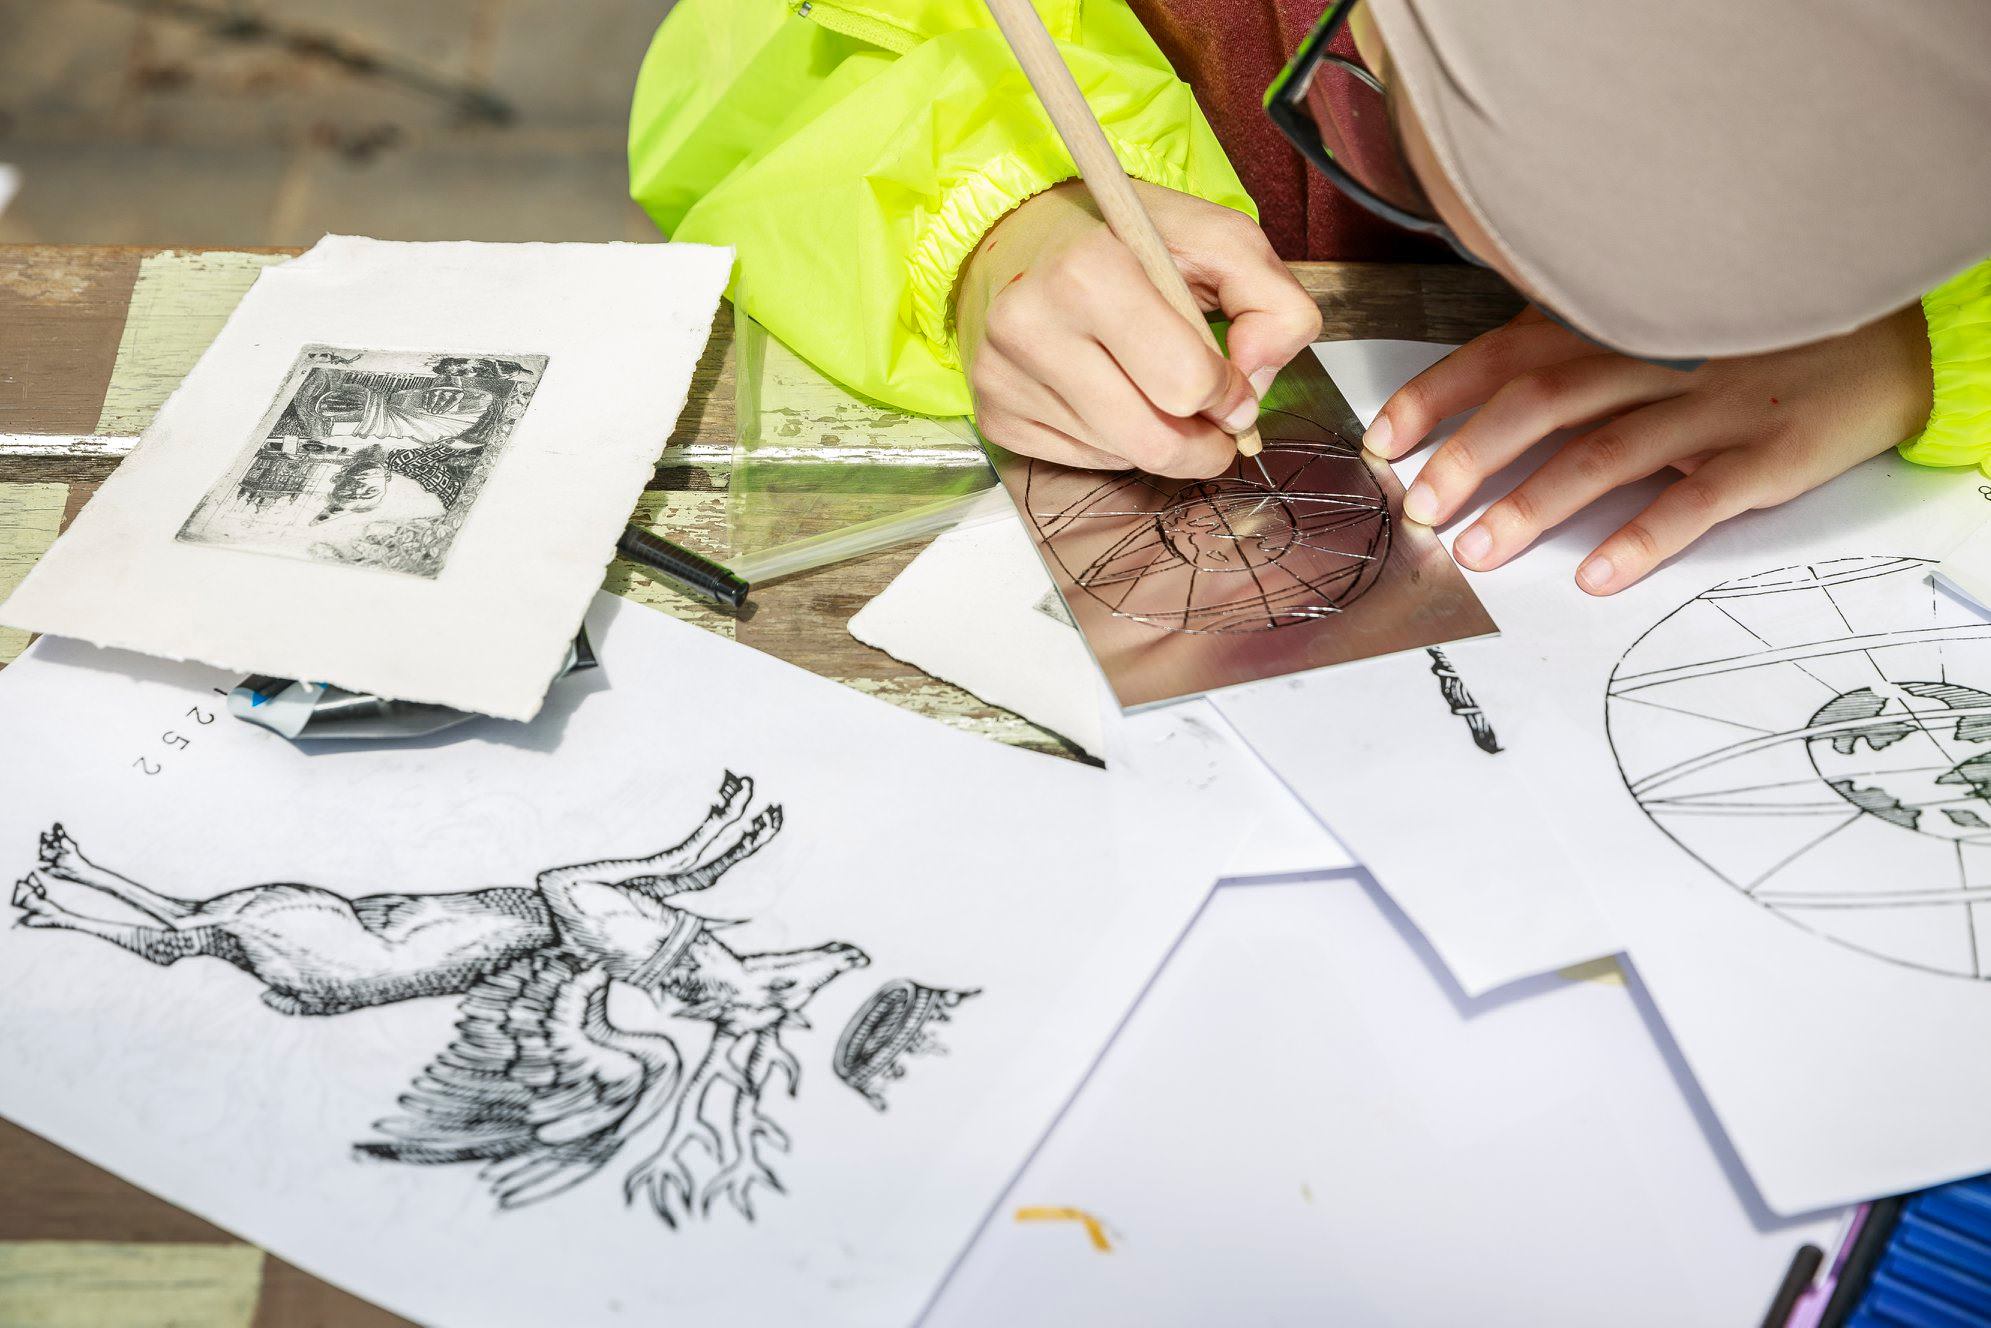 Workshop: Master etching drypoint | schools